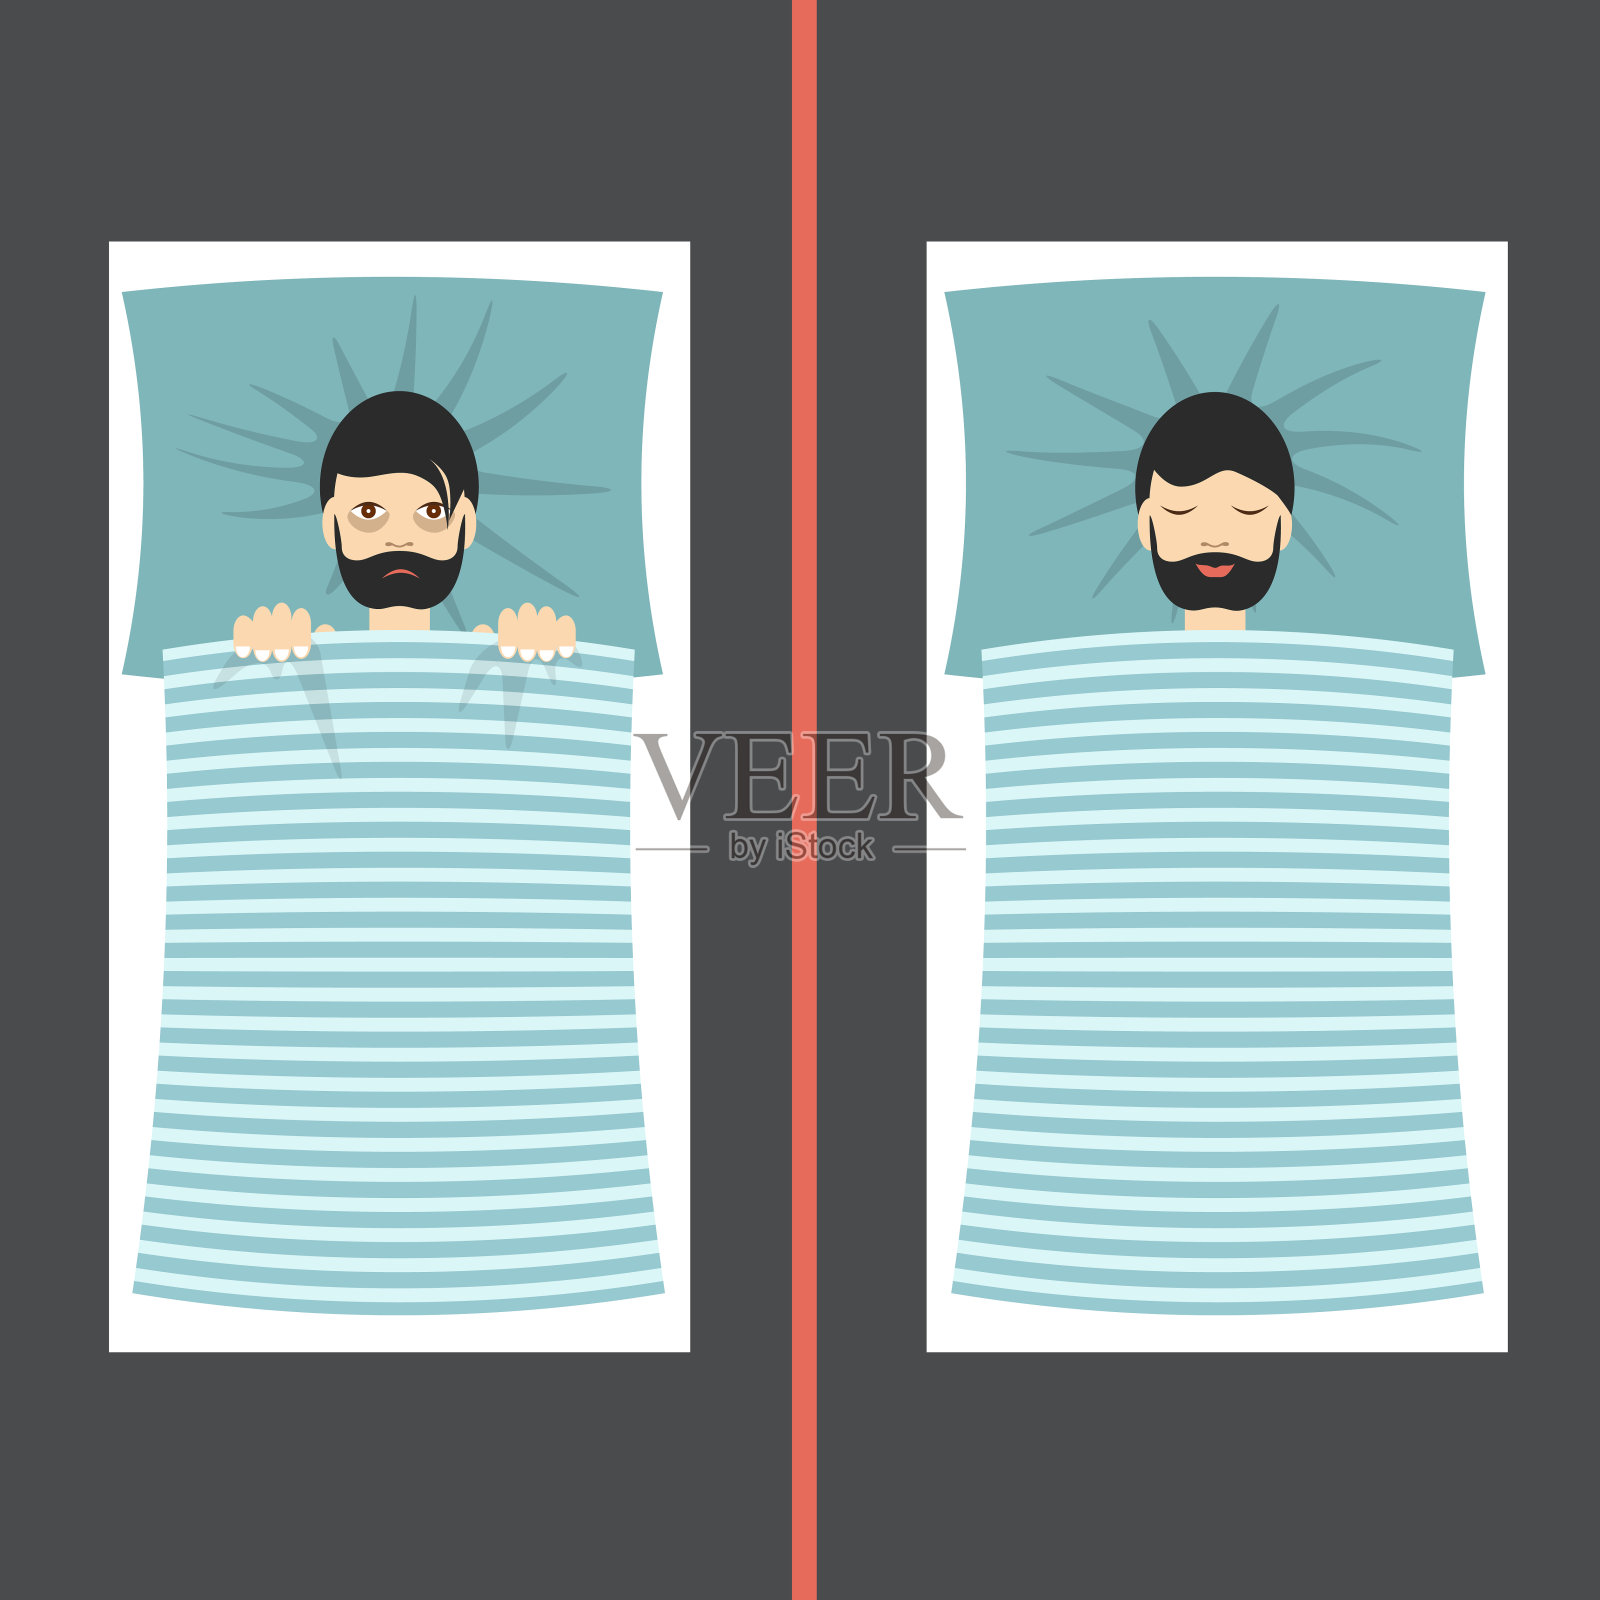 有睡眠问题和失眠症状的人与睡眠良好的人相比插画图片素材